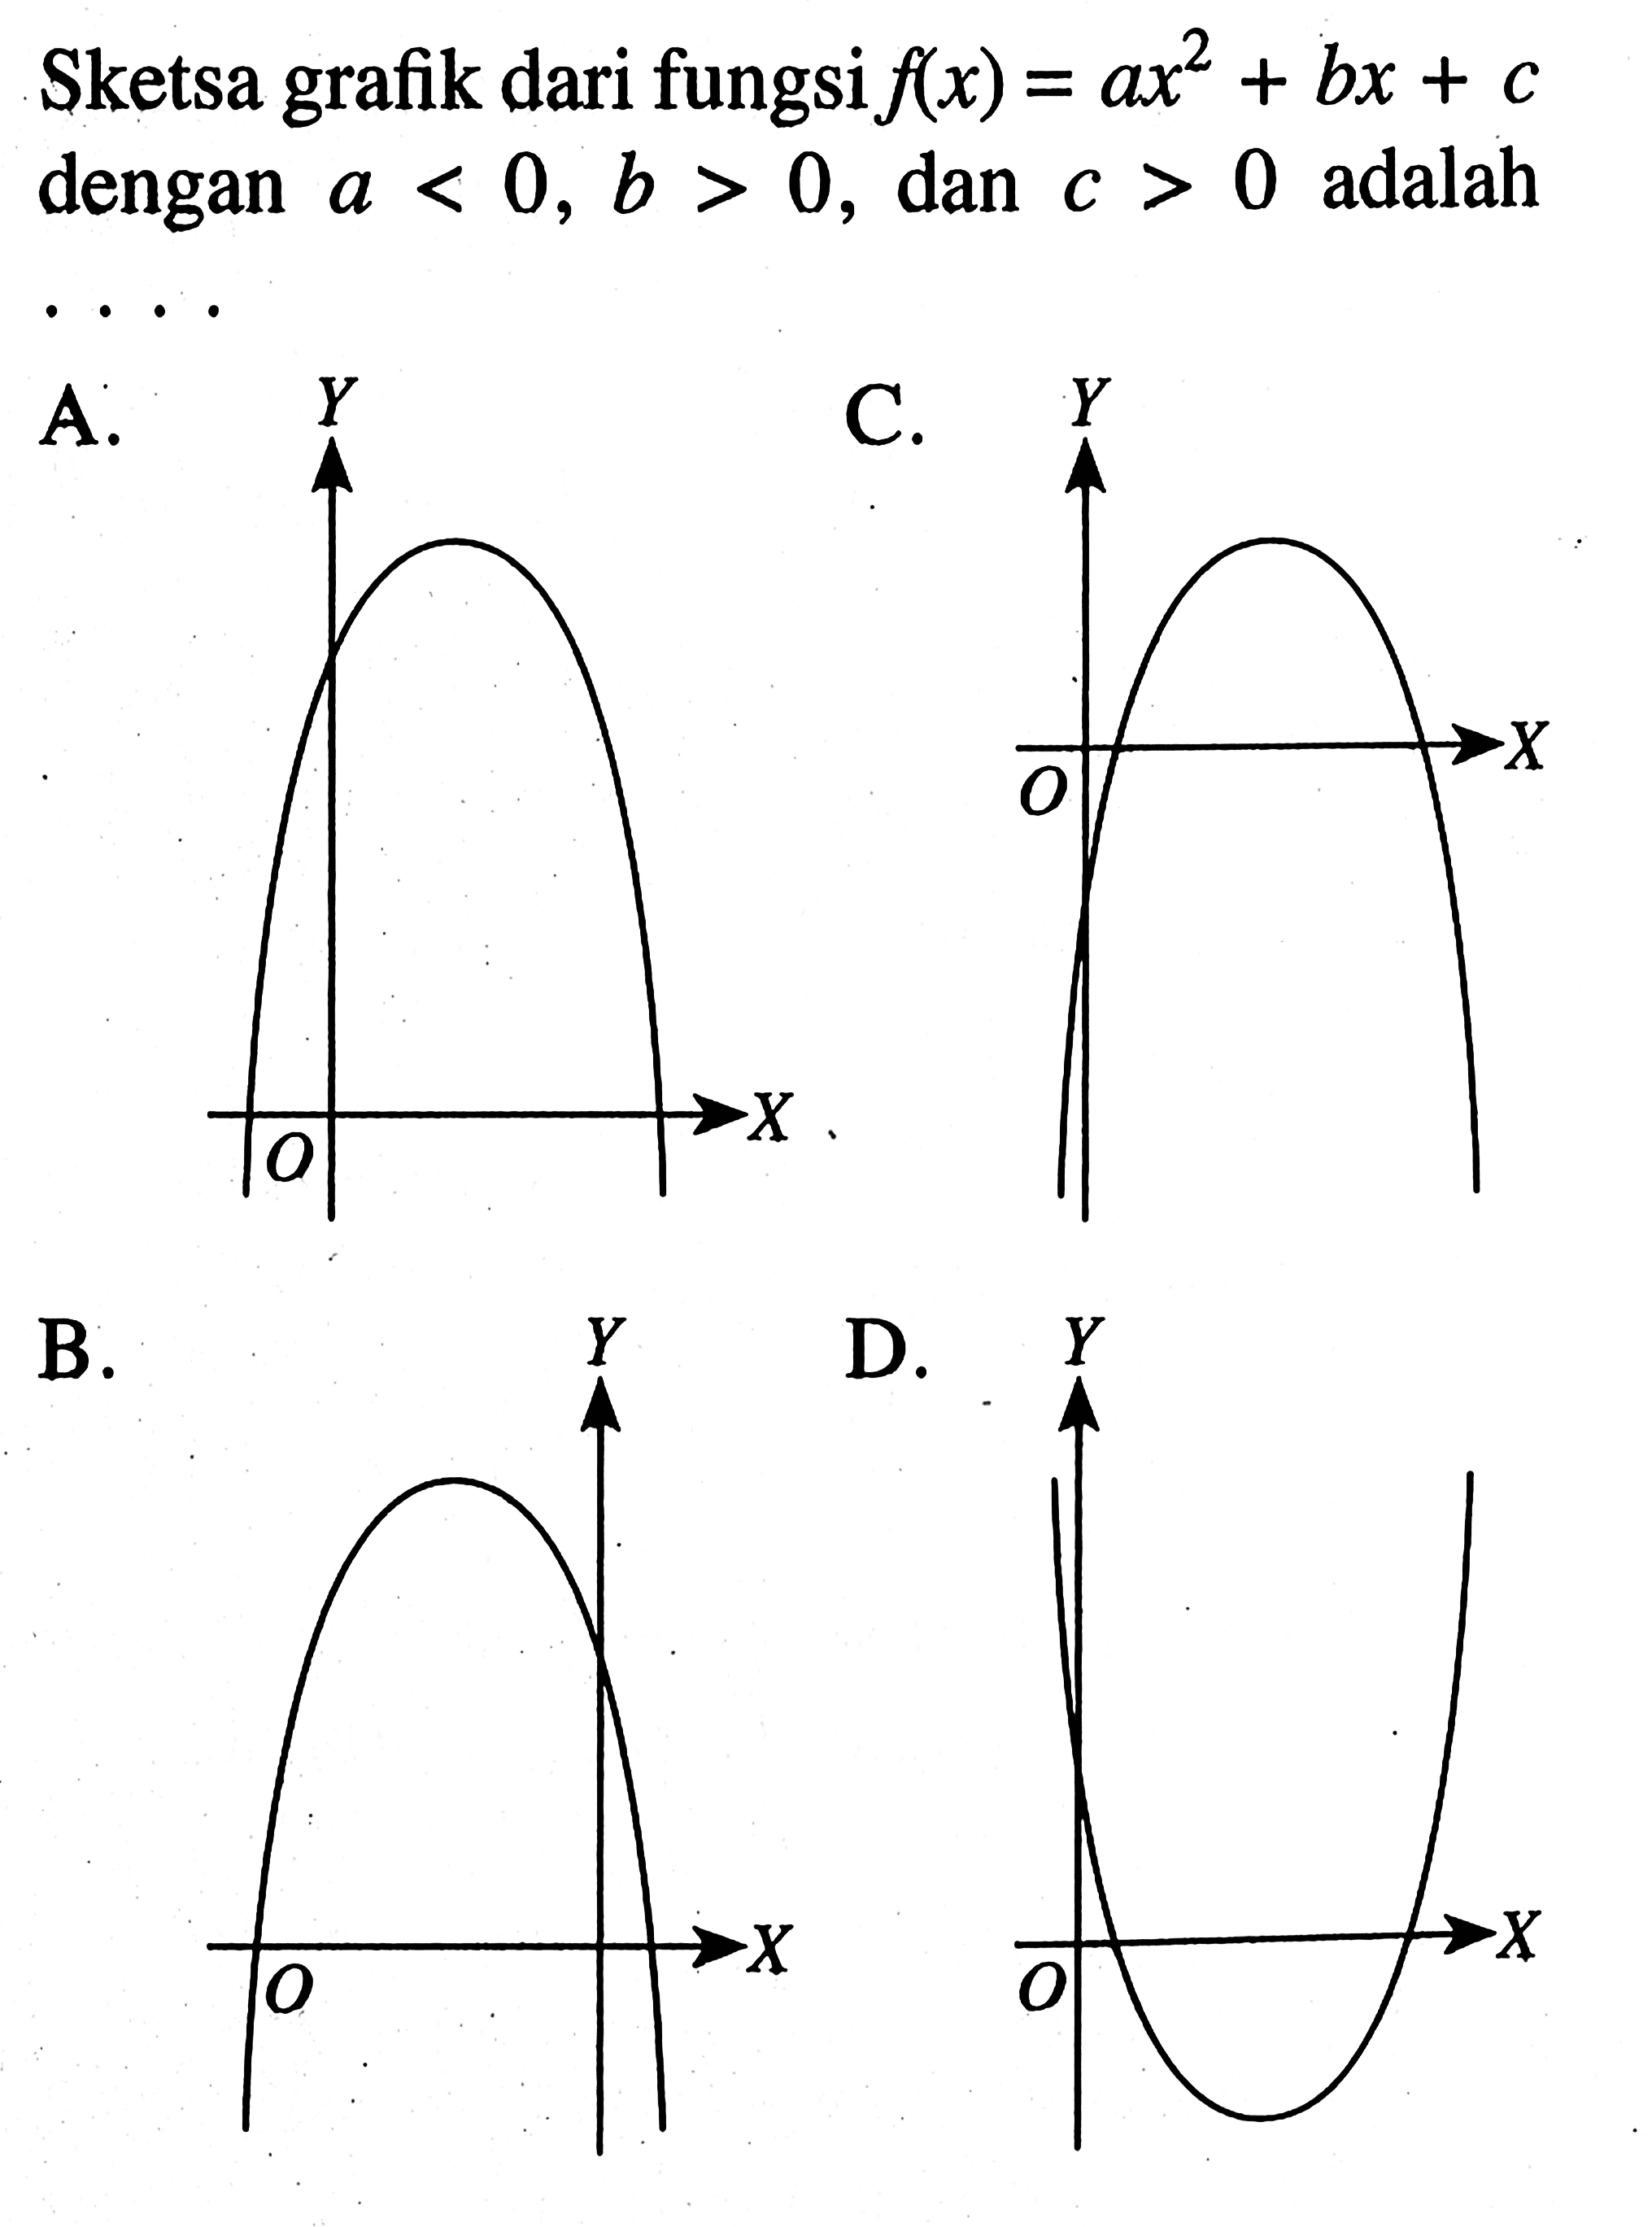 Sketsa grafik dari fungsi f(x) = ax^2 + bx + c dengan a < 0, b > 0, dan c > 0 adalah